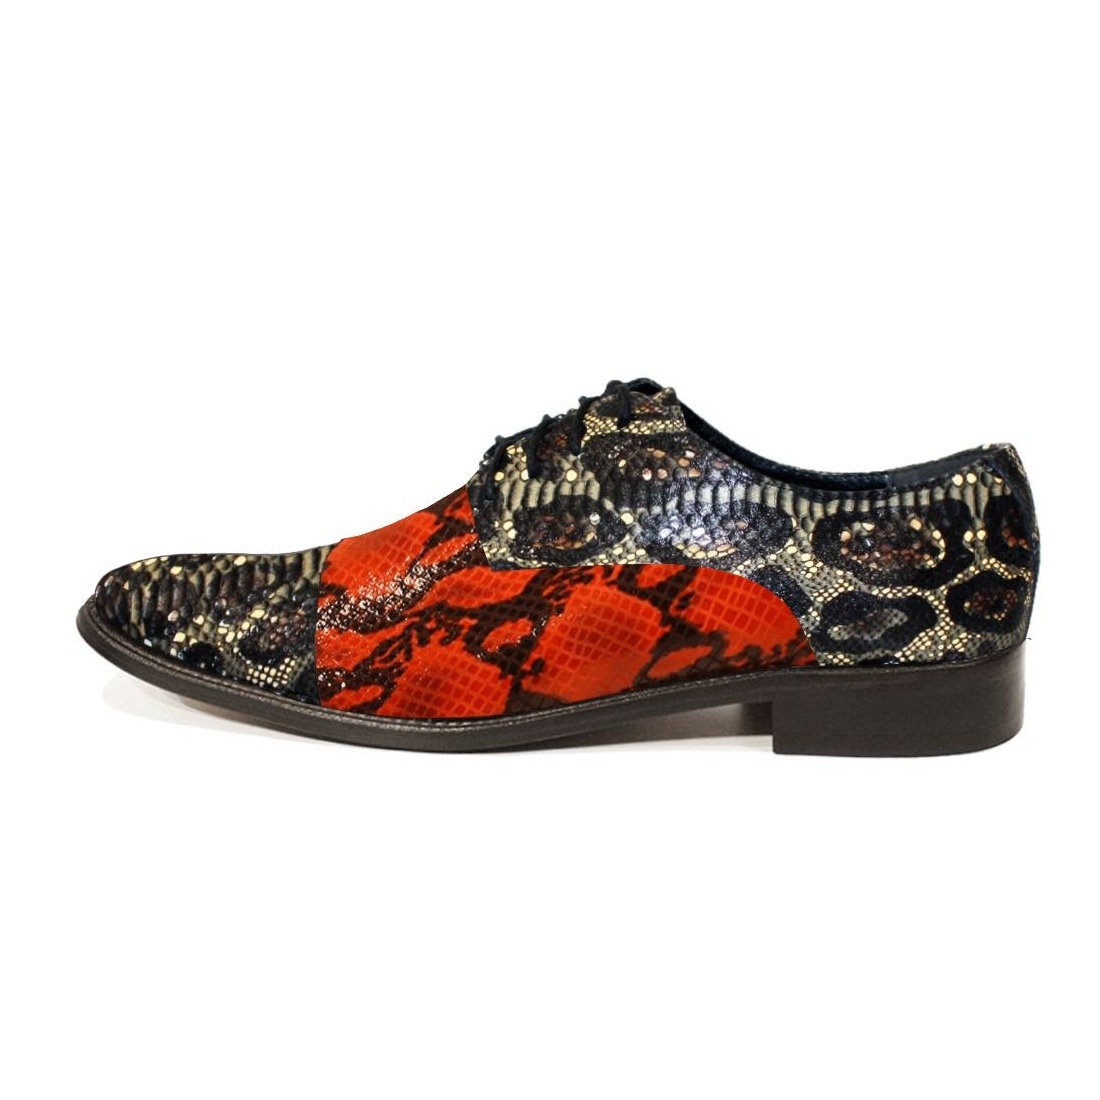 Modello Magello - Buty Klasyczne - Handmade Colorful Italian Leather Shoes